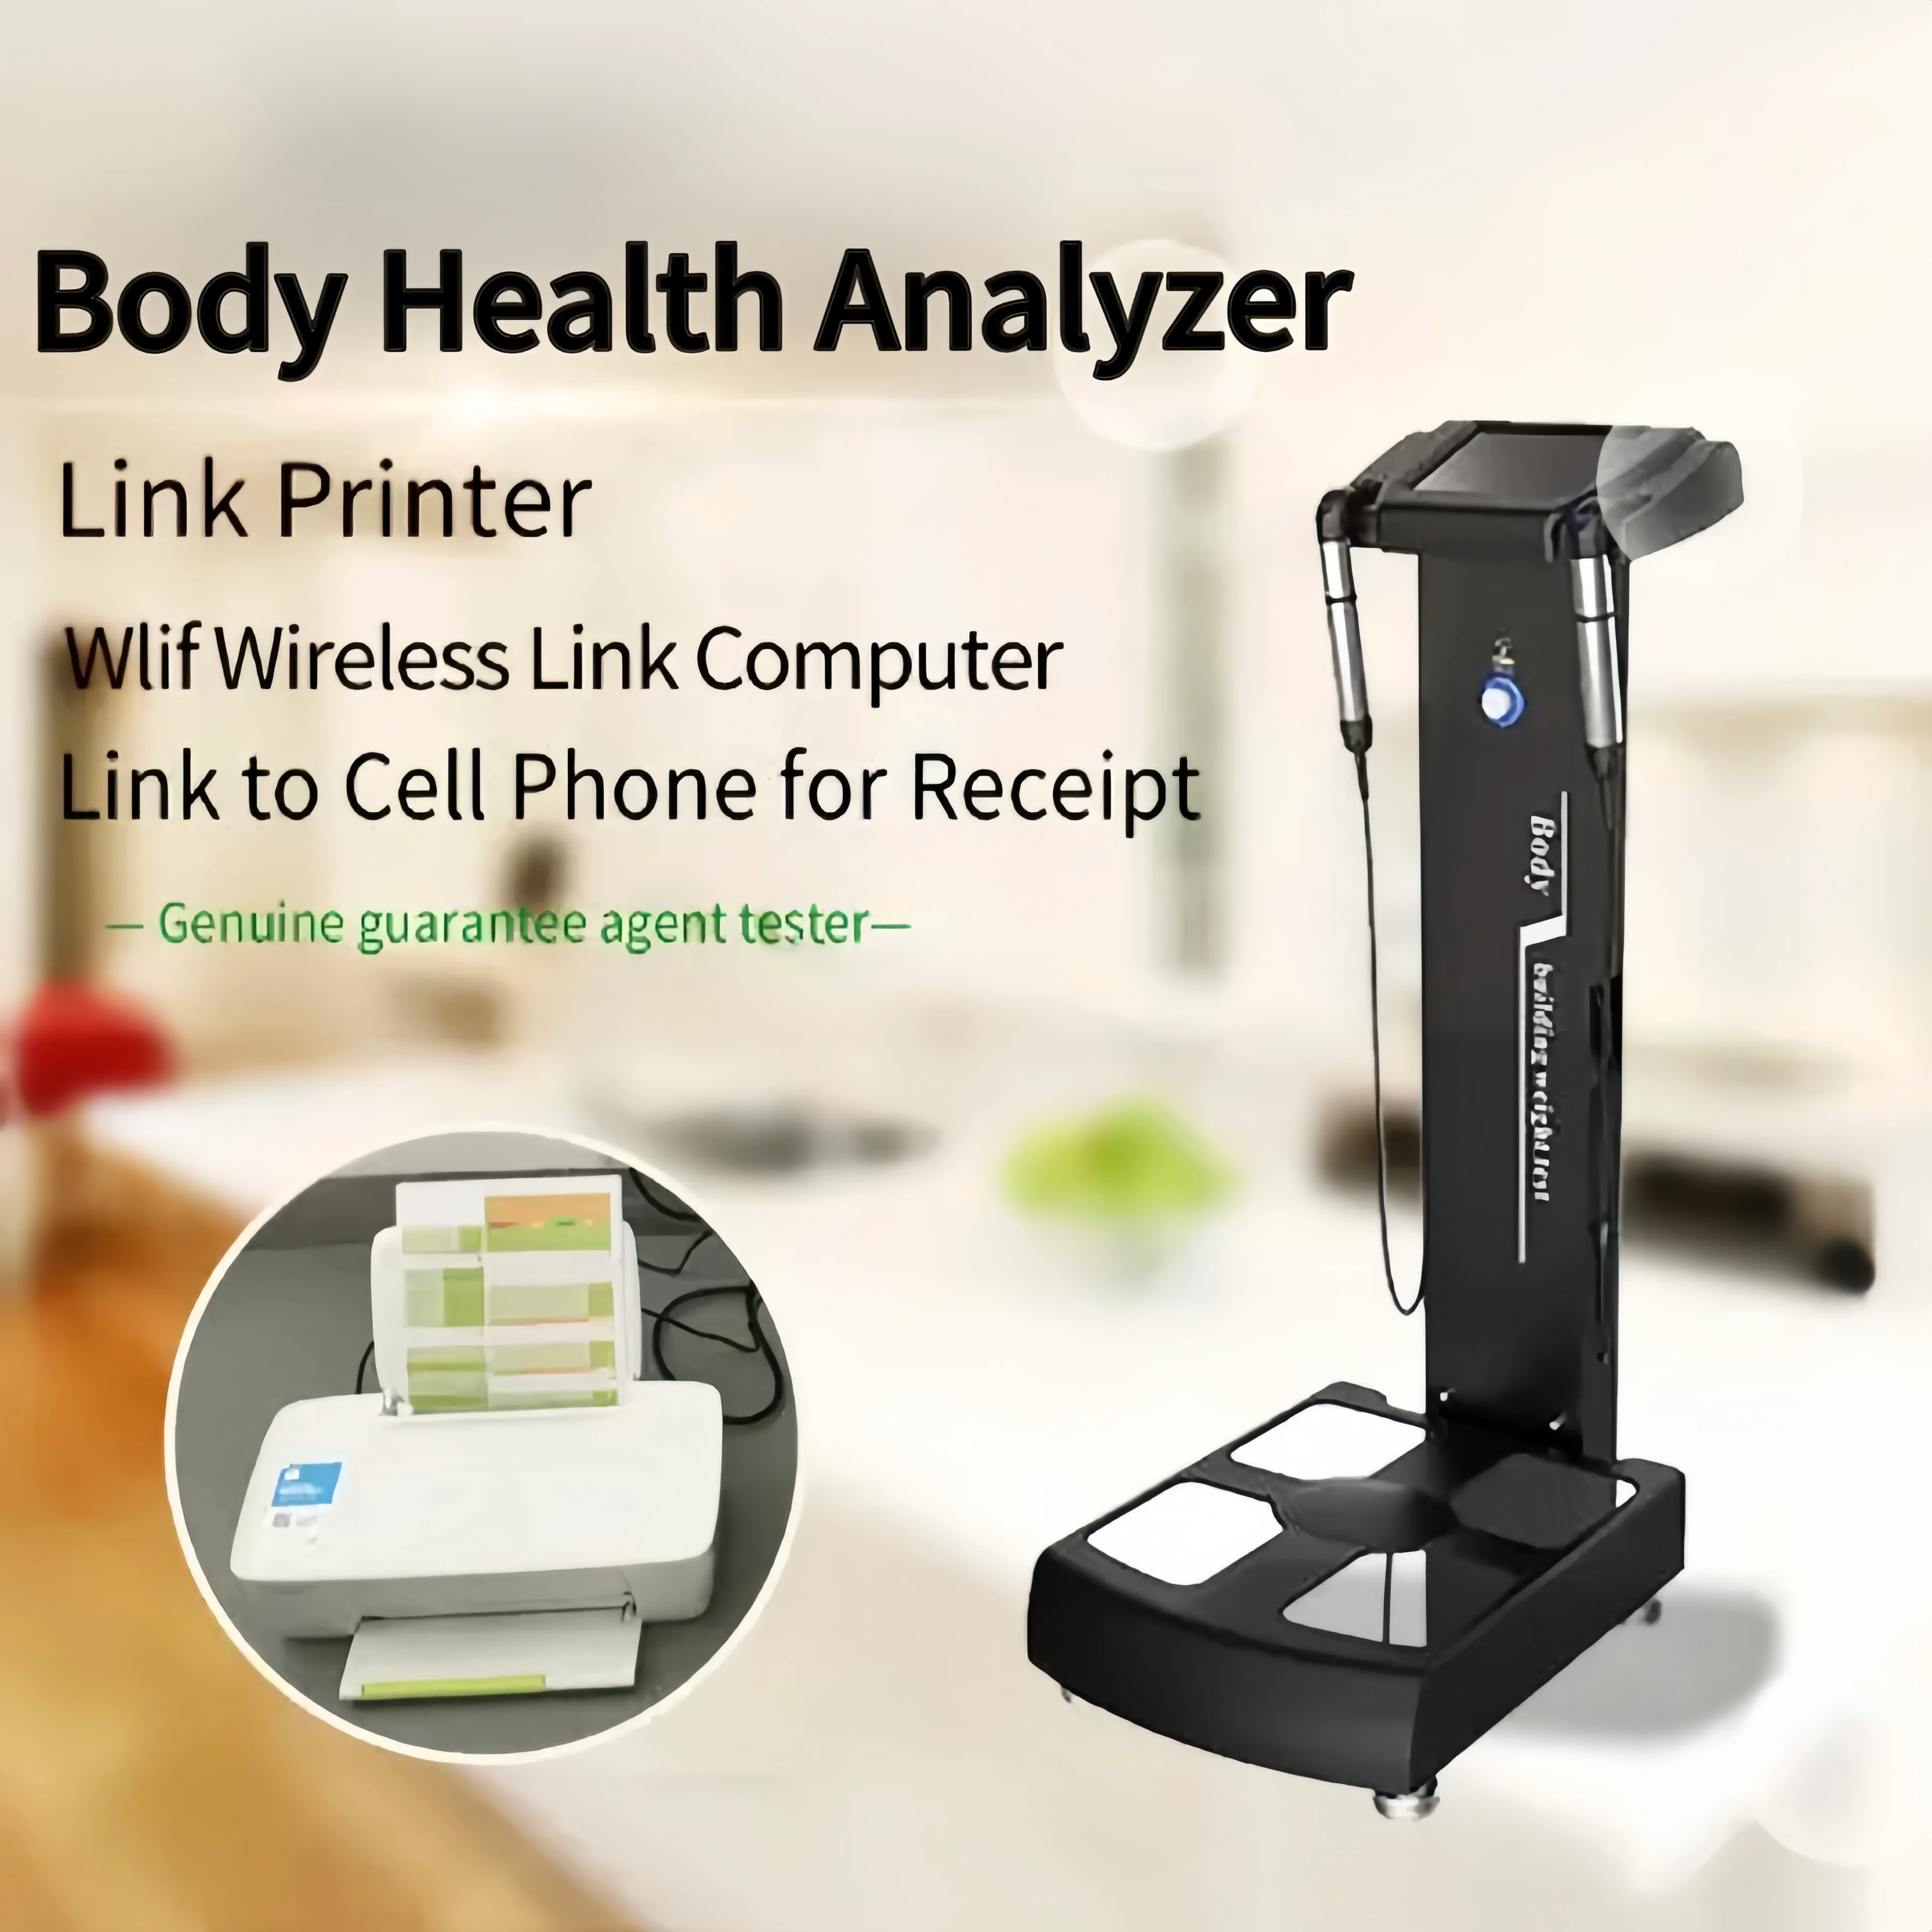 Preço barato equipamento analisador de saúde corporal analisador bioquímico analisador de composição corporal plano de tratamento para emagrecimento para humanos